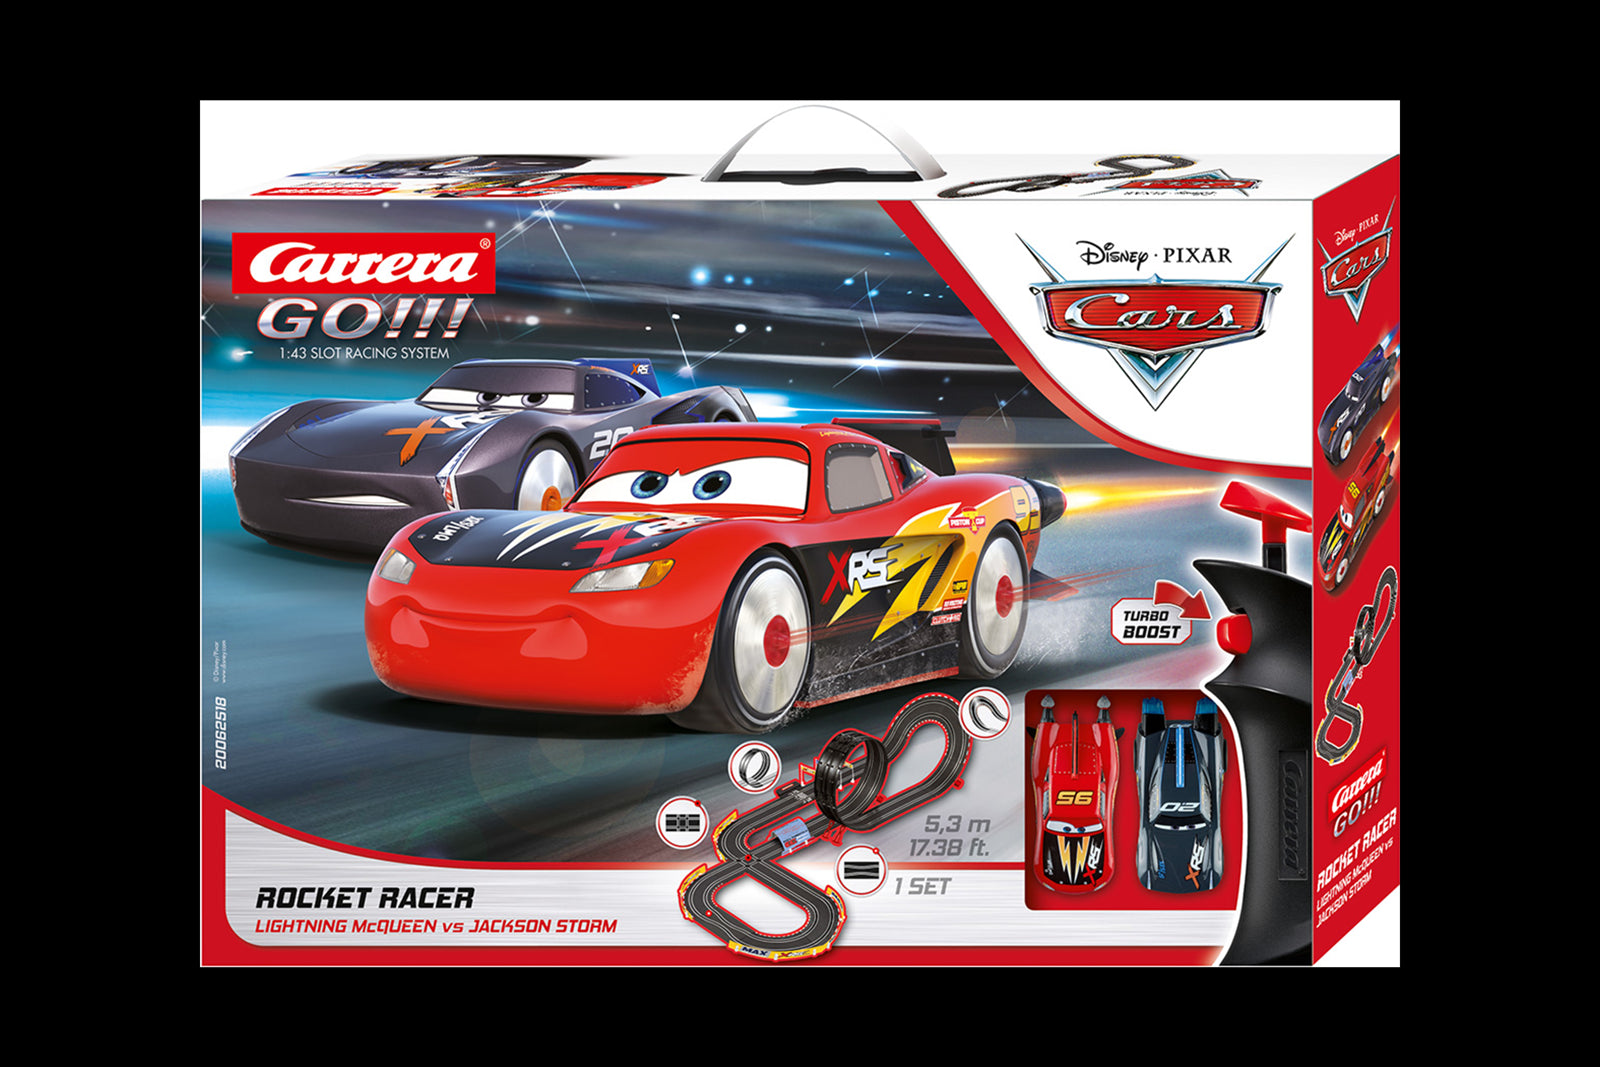 Nouveau Carrera Revell Circuit de voitures Carrera Go!, Disney Pixar Cars  avec le modèle original à des prix attractifs en France